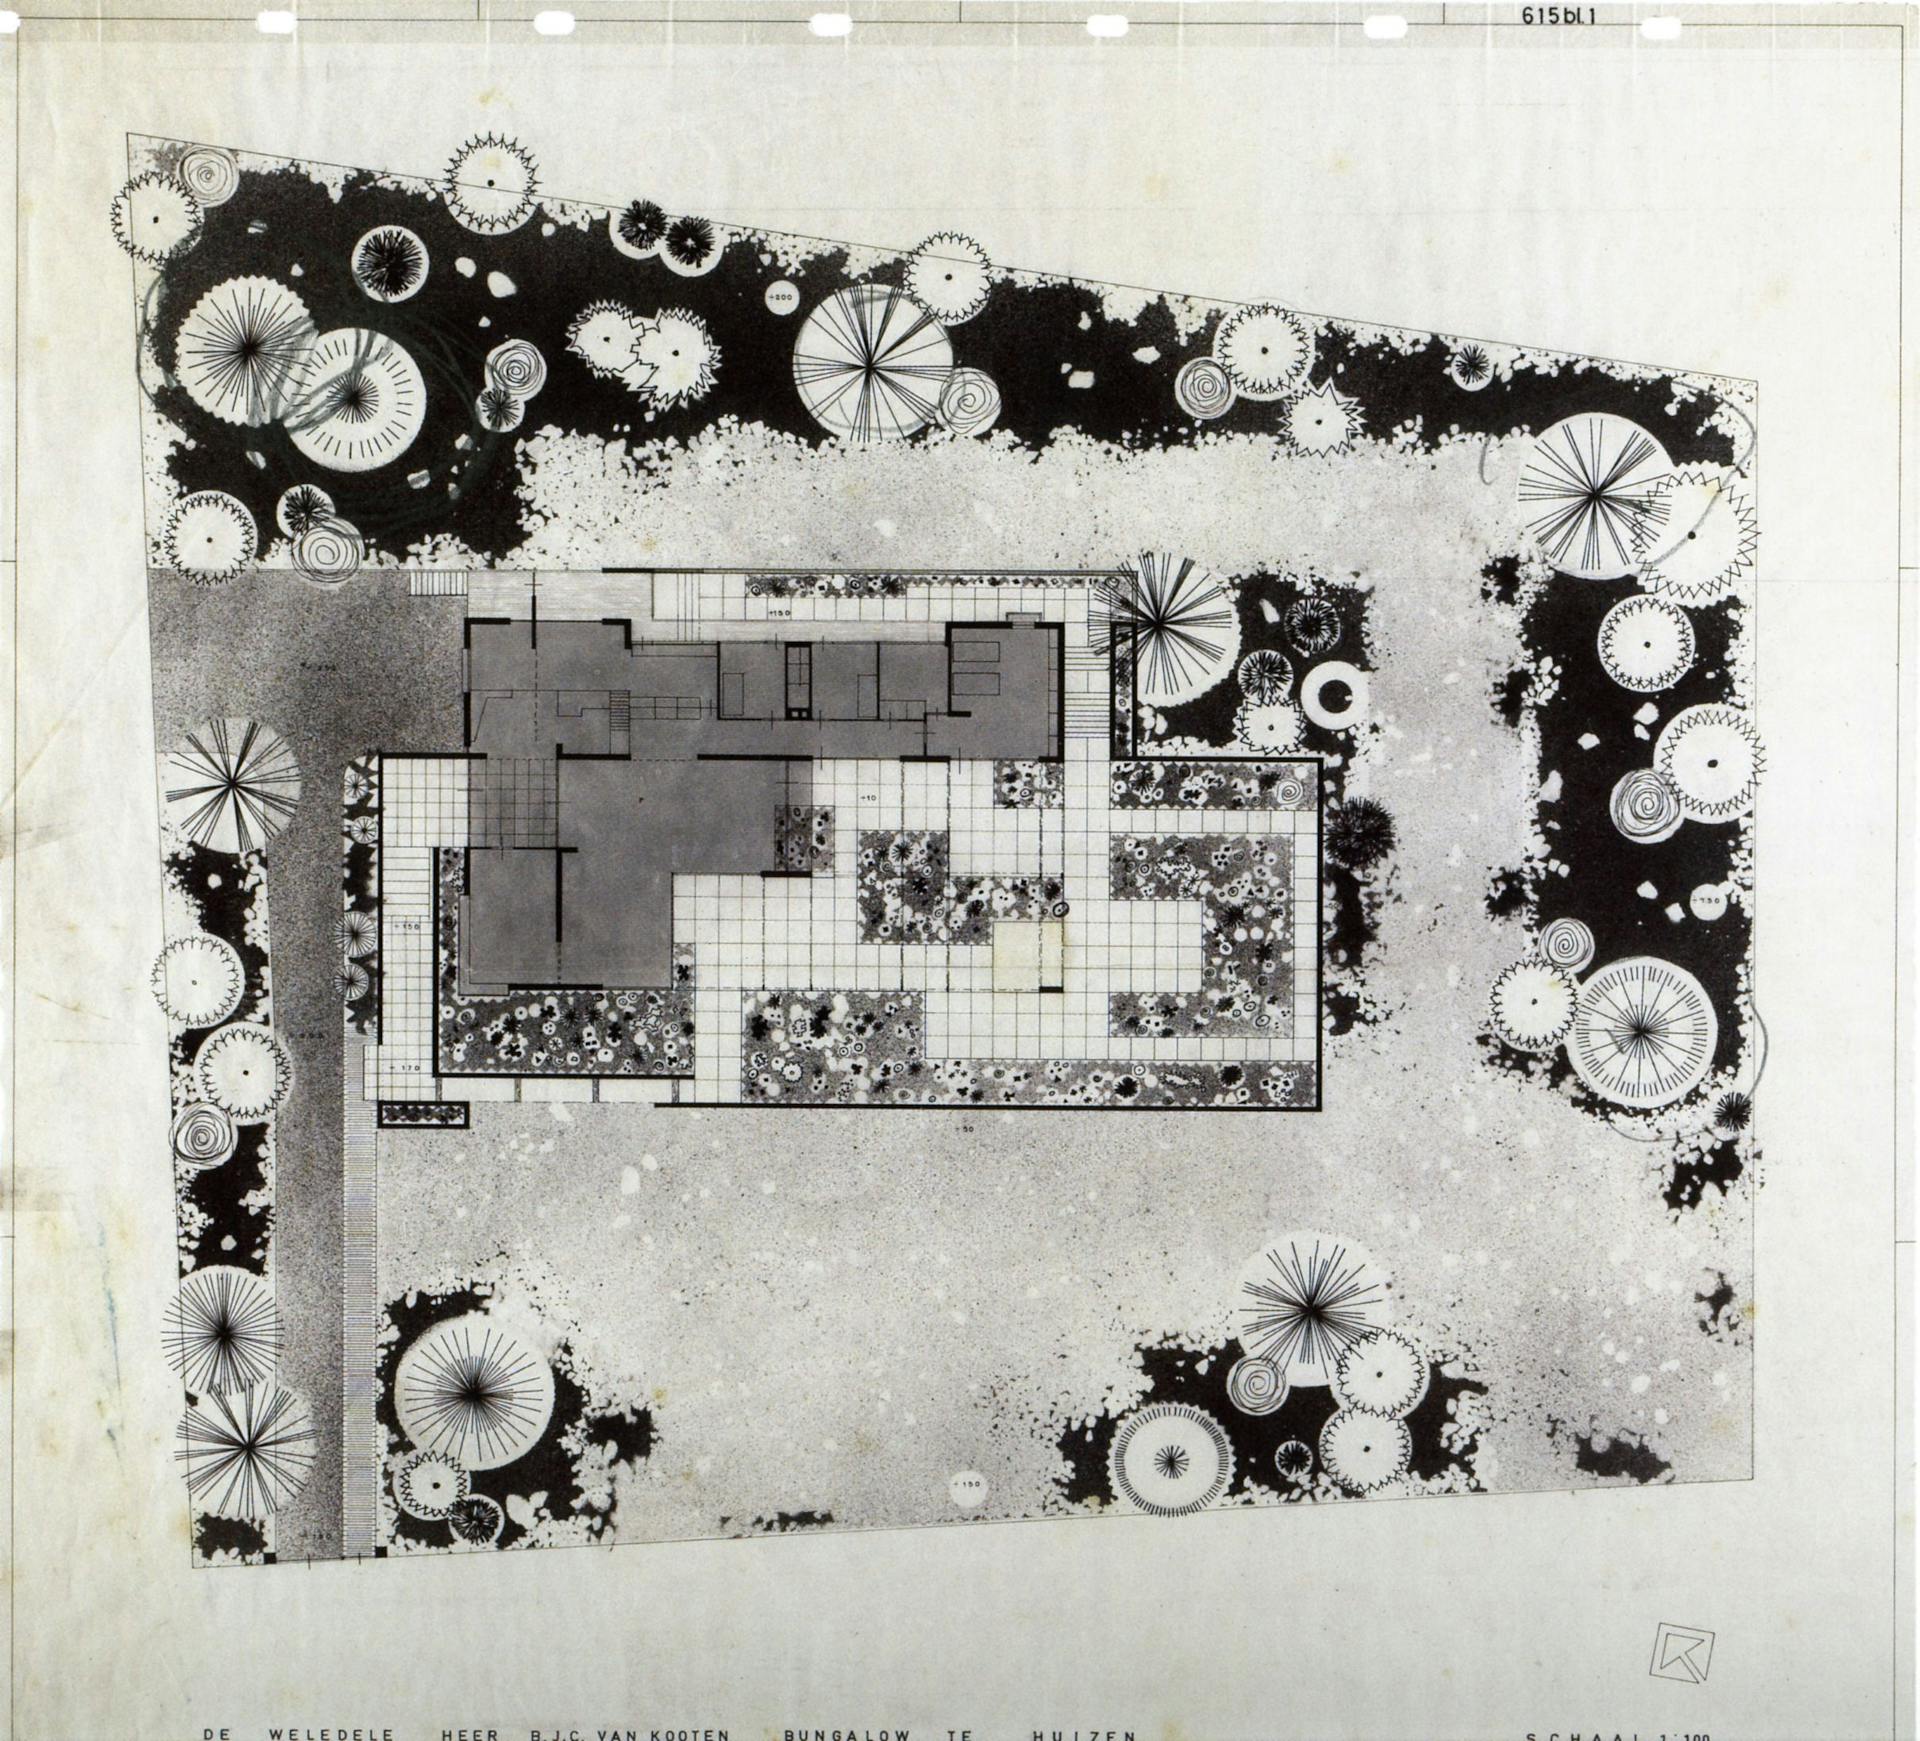 Pieter Buys. Plan for the Van Kooten garden in Huizen, 1962. Bureau-archief MTD Landschapsarchitecten Den Bosch. 